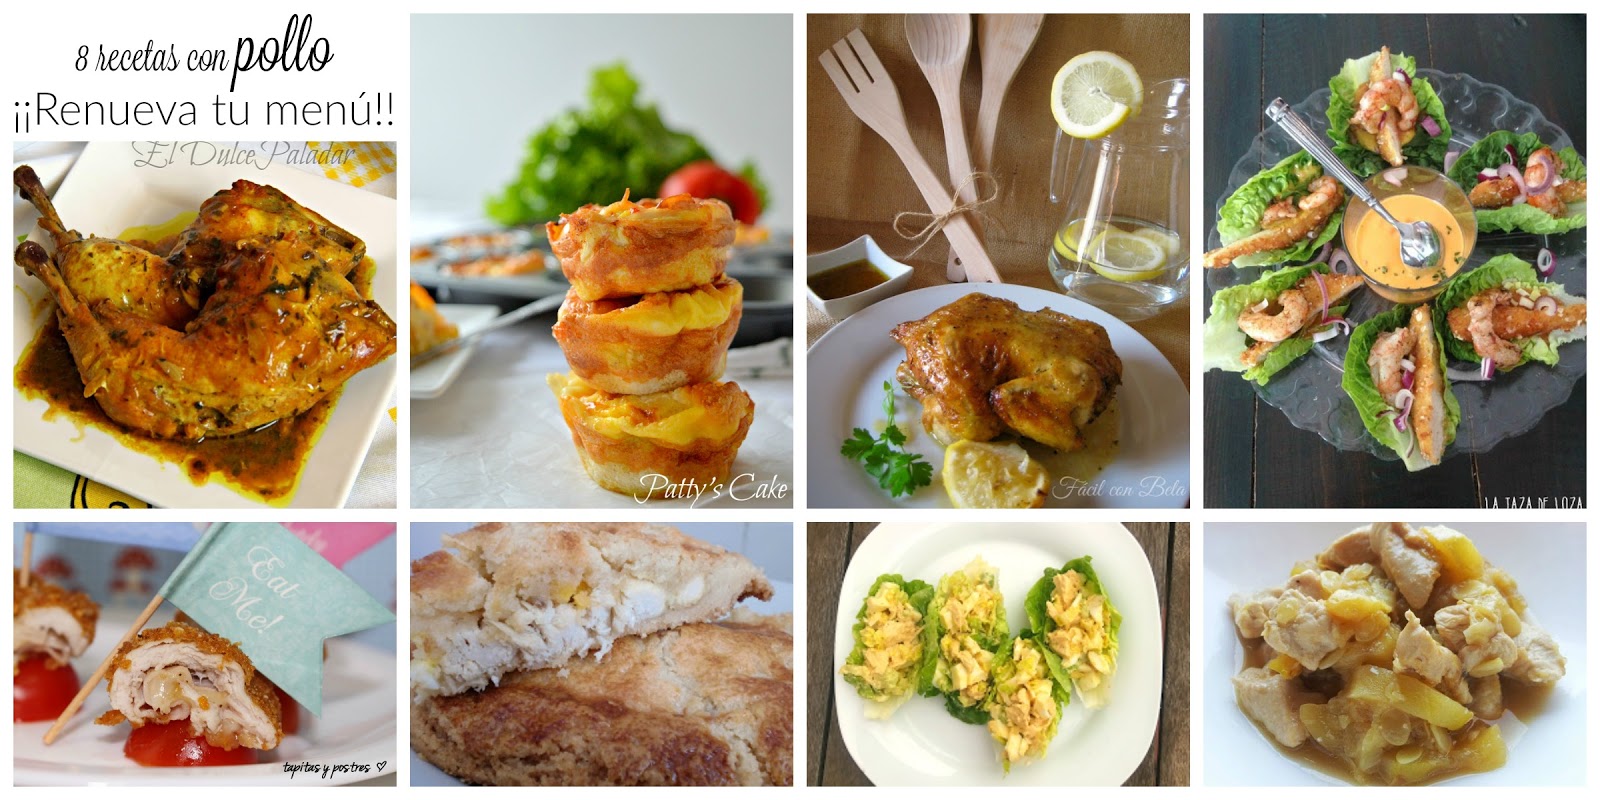 8 recetas con pollo y renueva tu menú